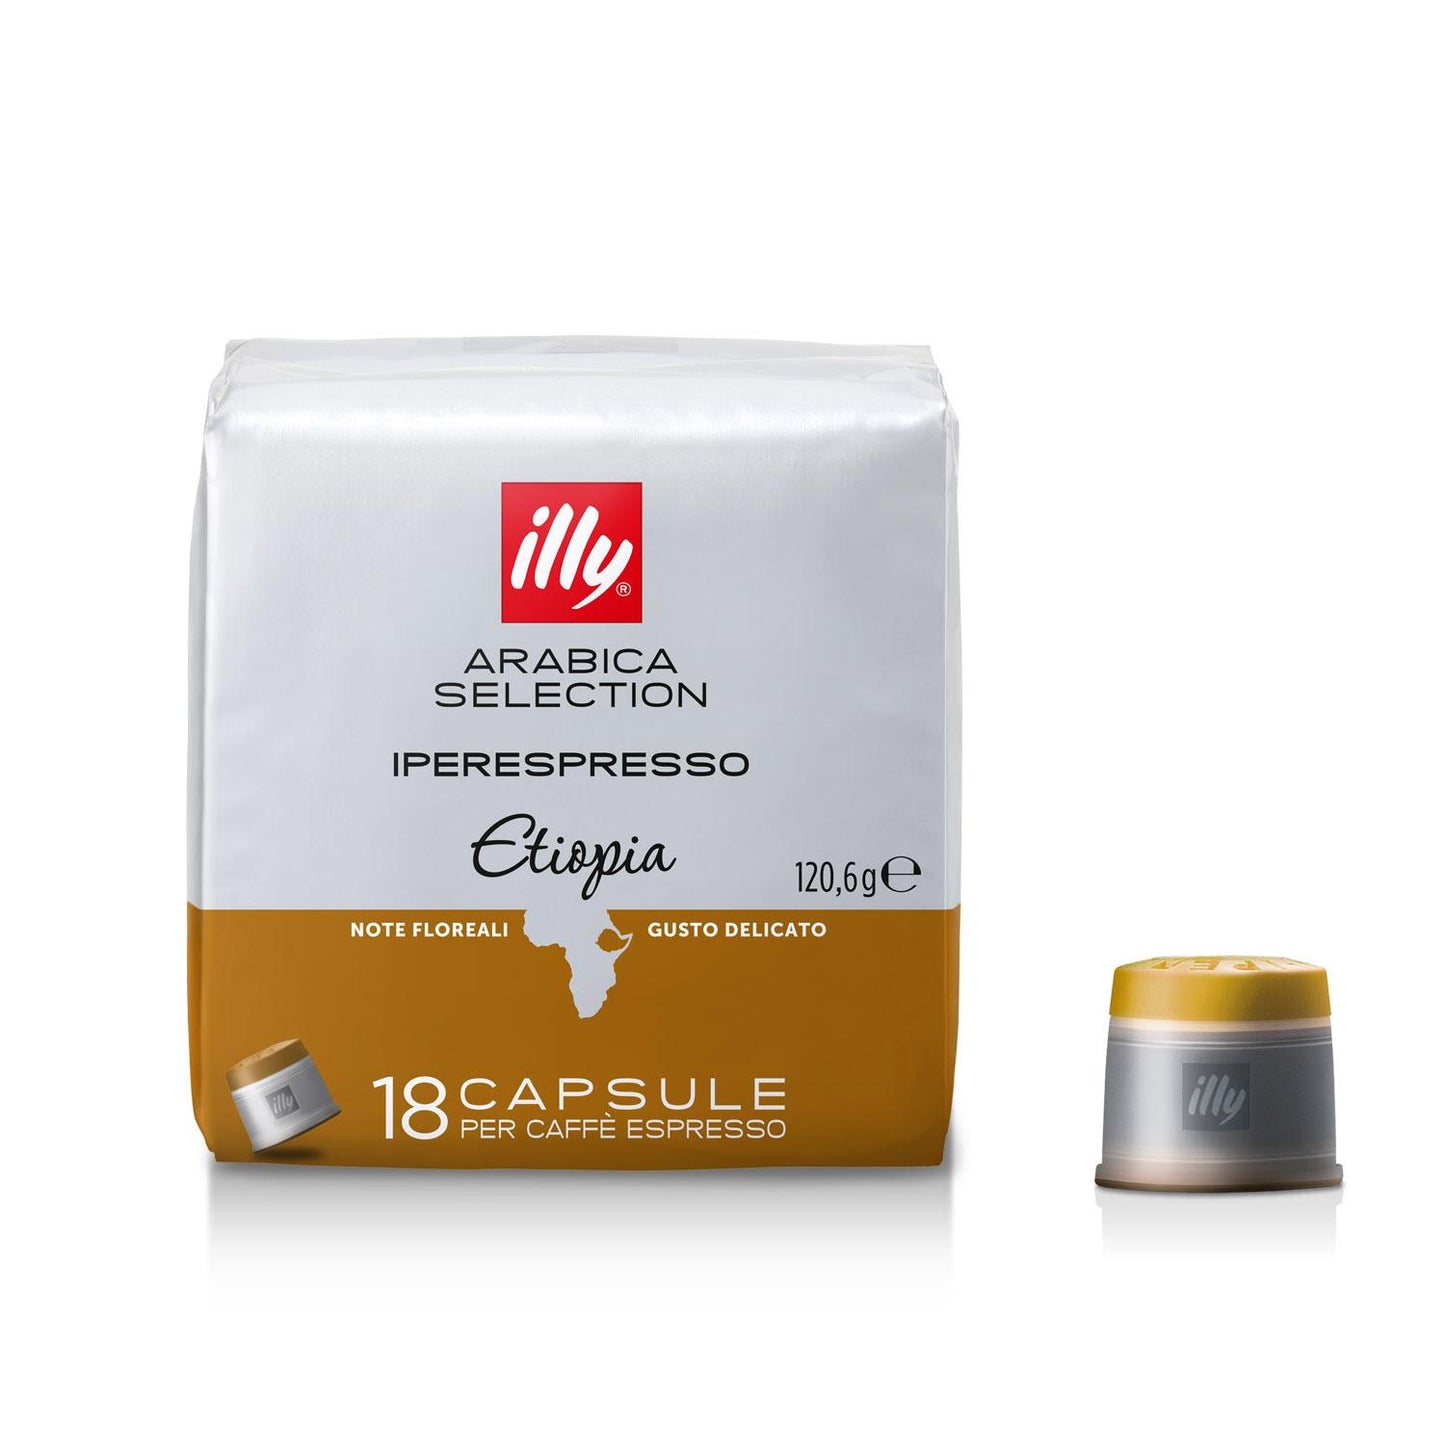 Ethiopia Iperespresso Capsule Coffee (18 Pieces)